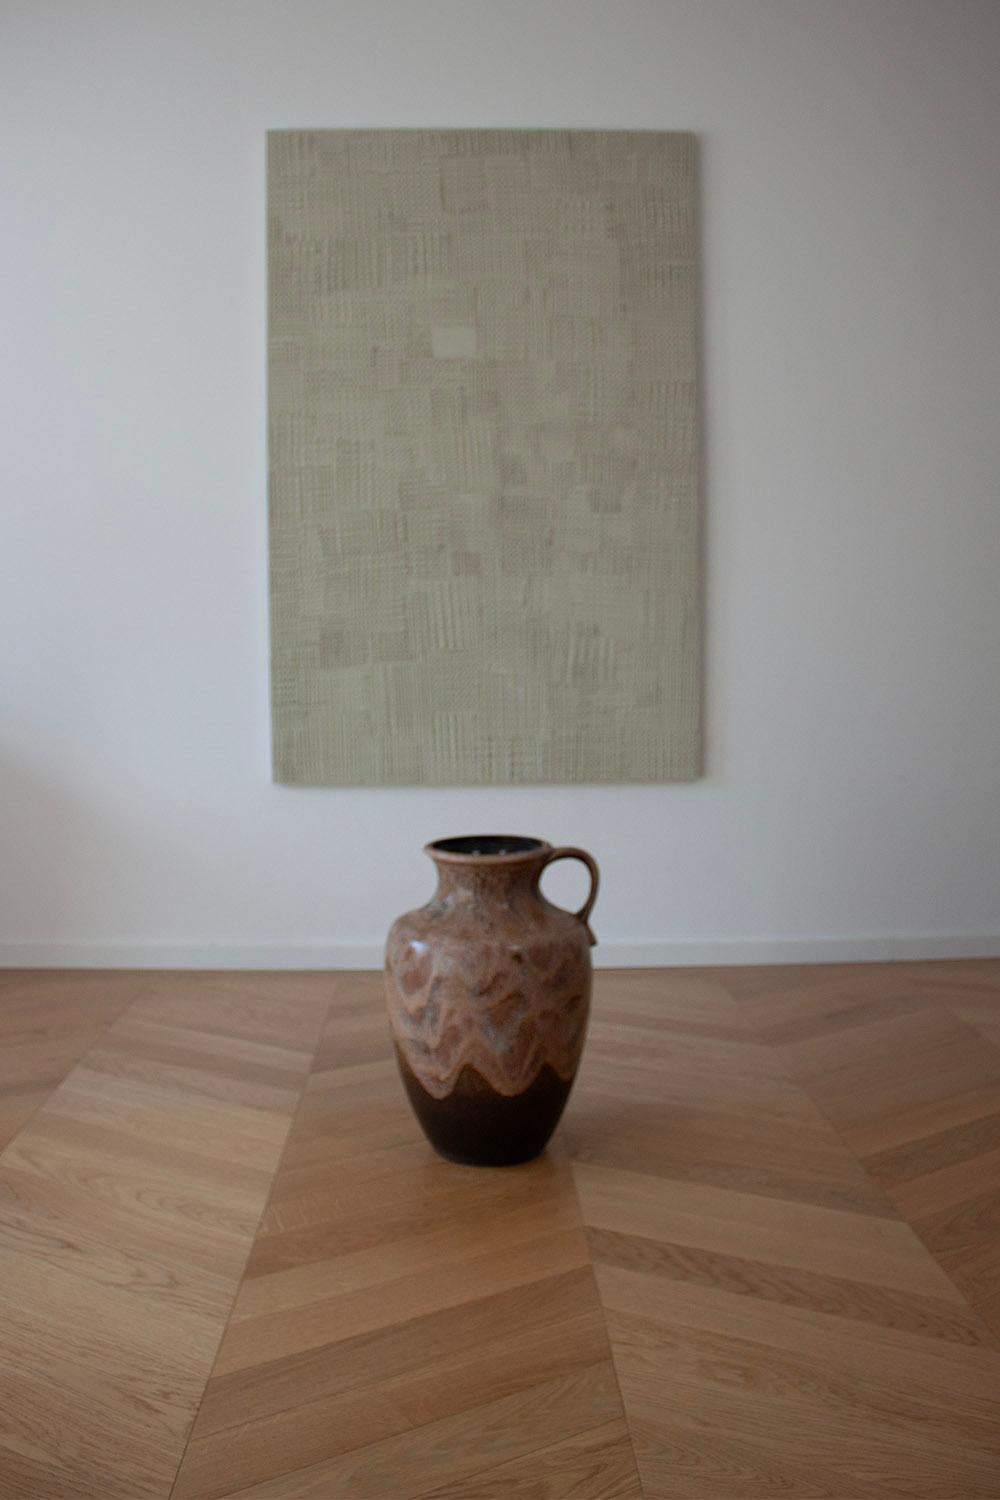 Diese keramische Boden- oder Astvase von Dümler & Breiden ist ein großartiges Beispiel für den deutschen Keramikdesign-Stil der Jahre 1960-1970. Dieser Stil zeichnet sich durch seinen brutalistischen Einfluss in Kombination mit modernen organischen